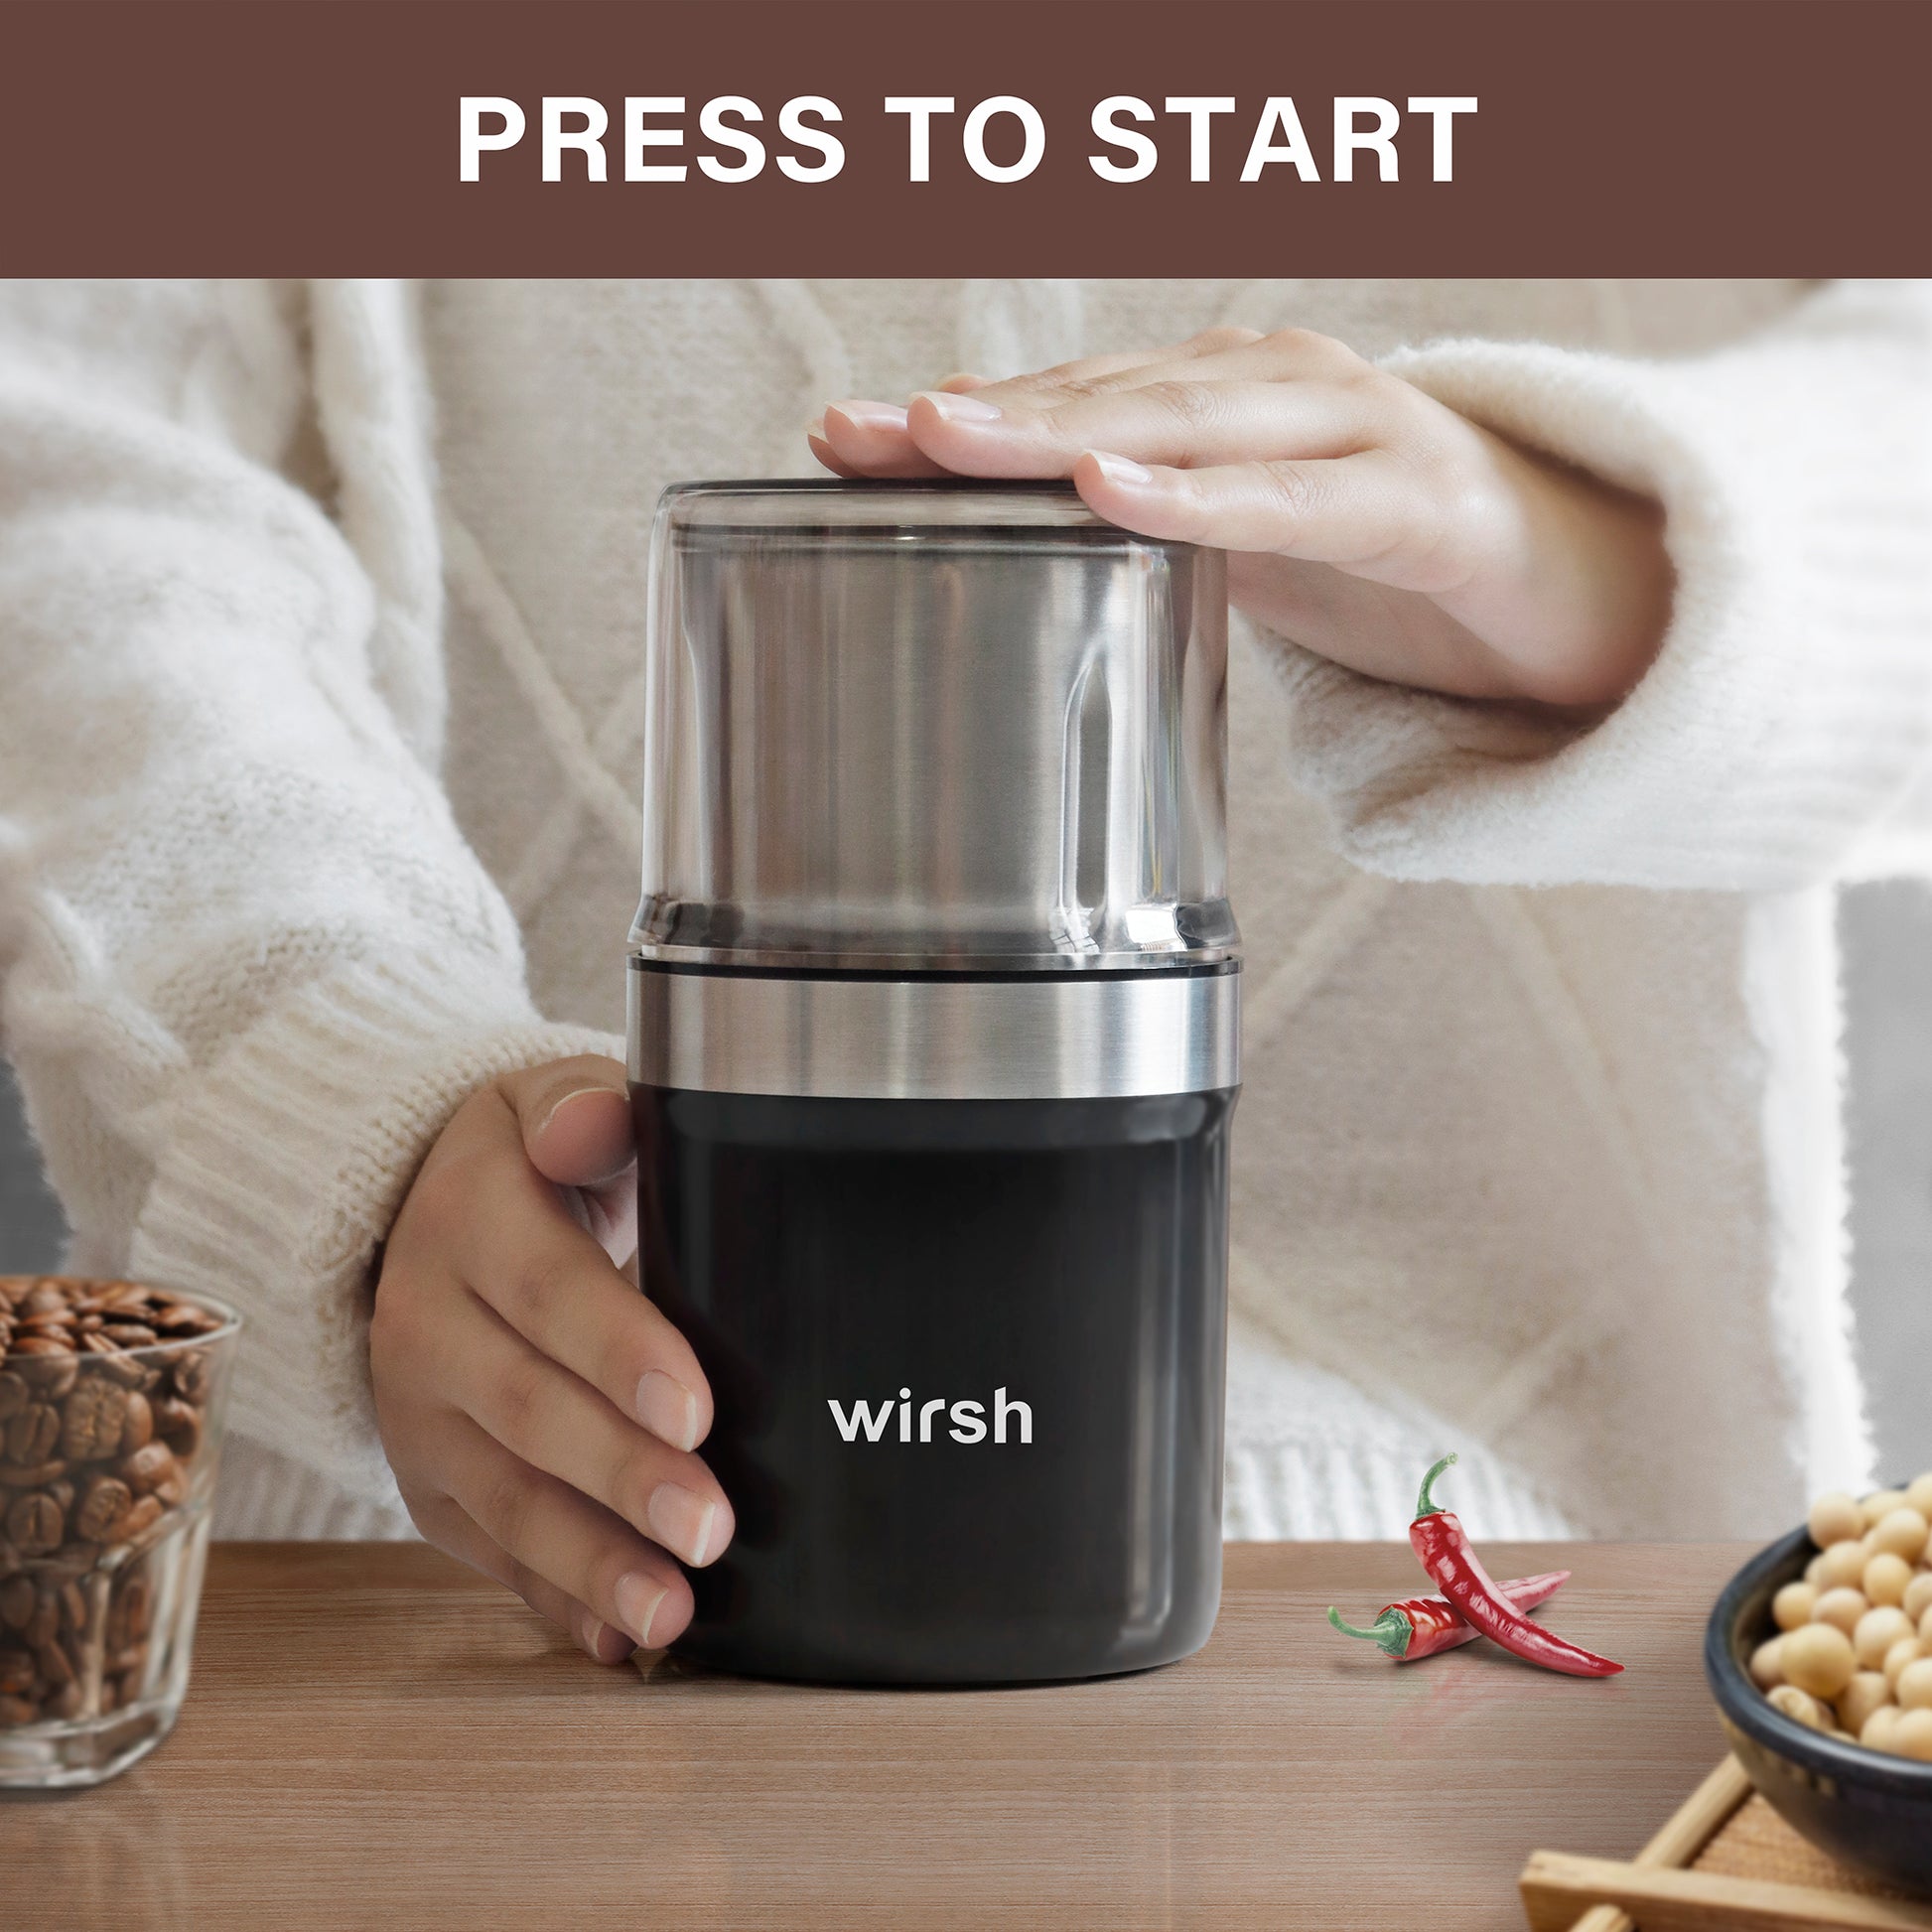 <img src="coffee grinder.jpg" alt="press to start wirsh grinder"/>